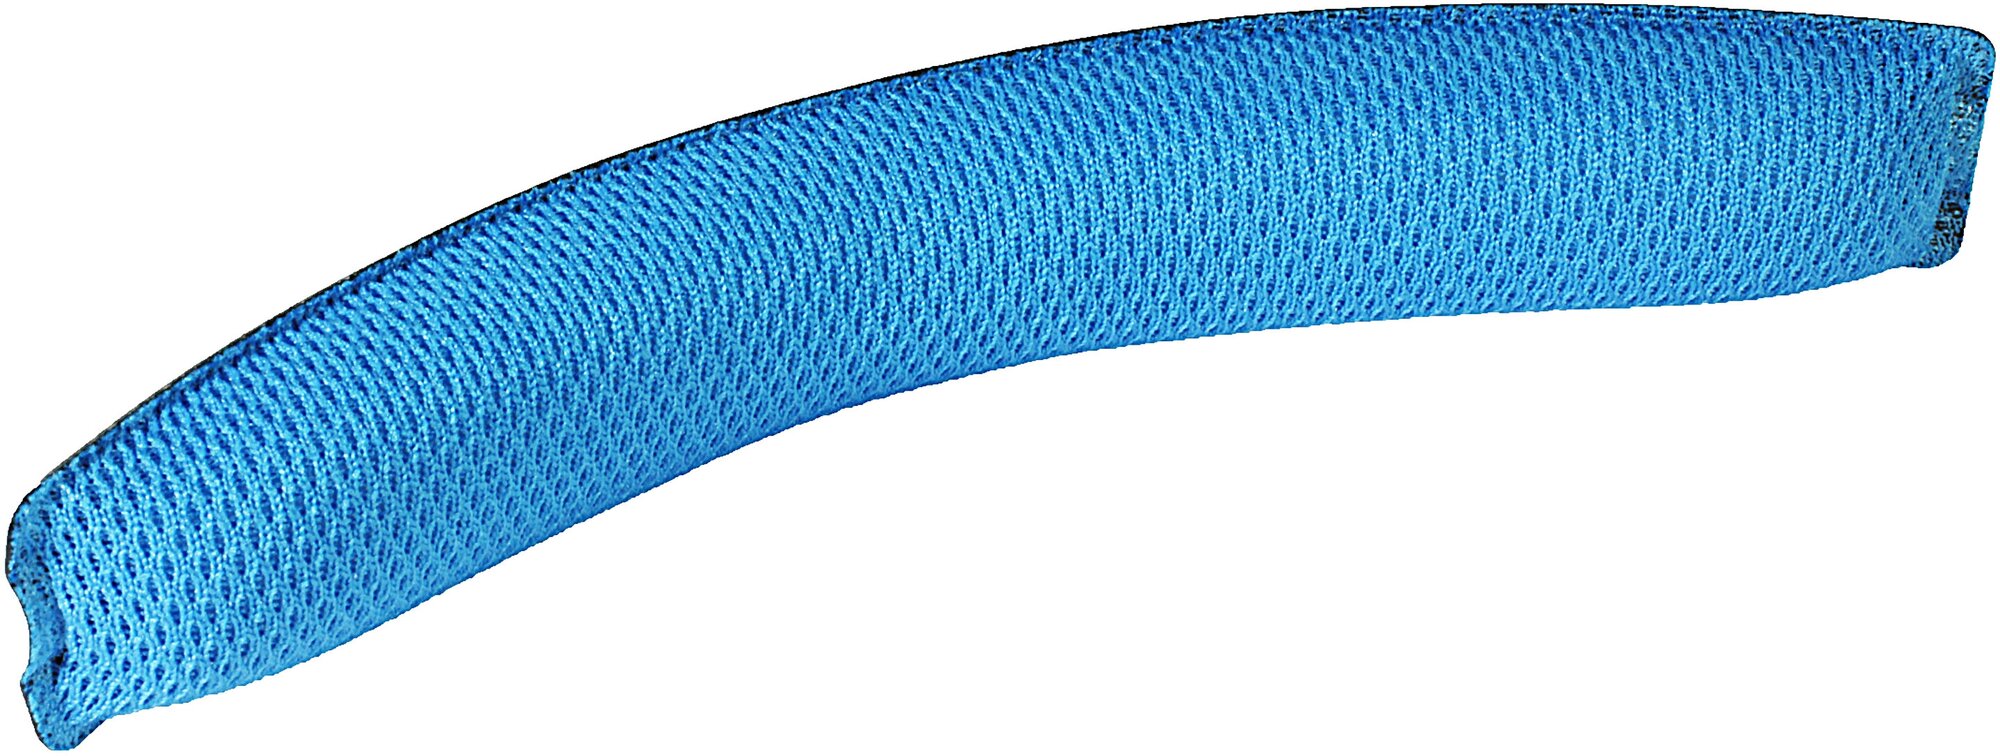 Накладка на оголовье для Logitech G430 из тканного материала голубая